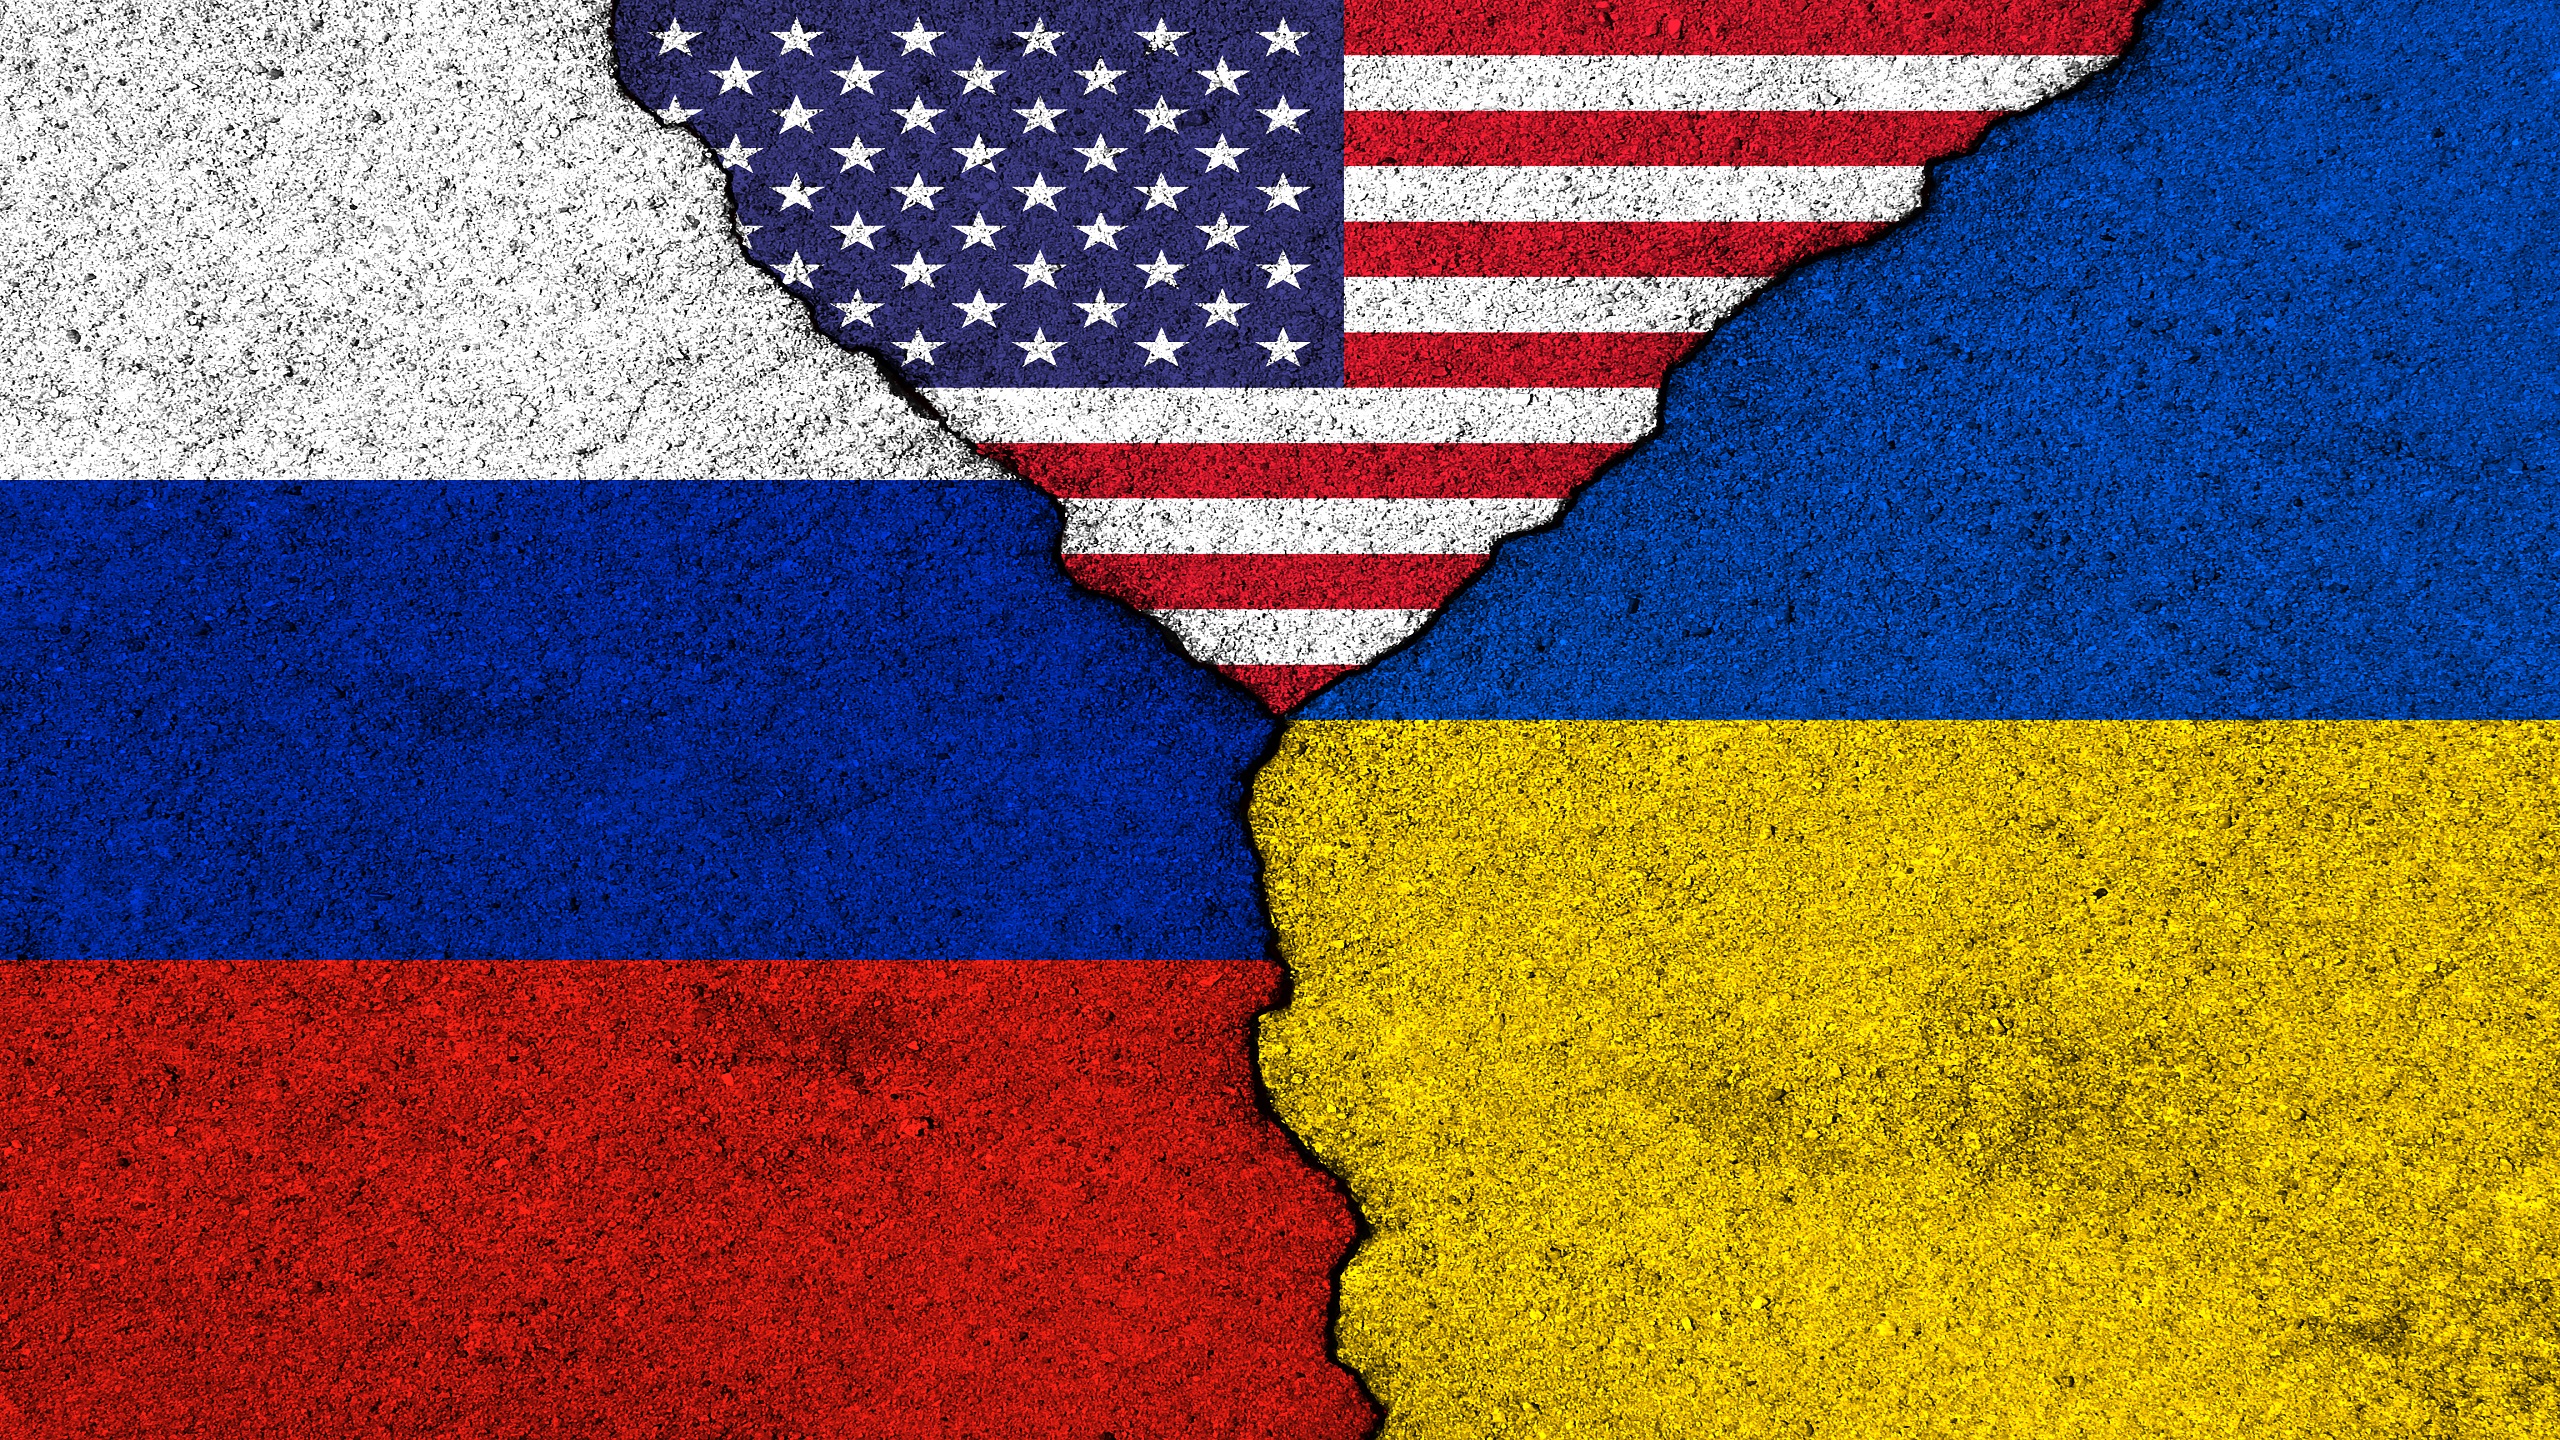 Moscou : les relations diplomatiques avec les tats-Unis pourraient se terminer